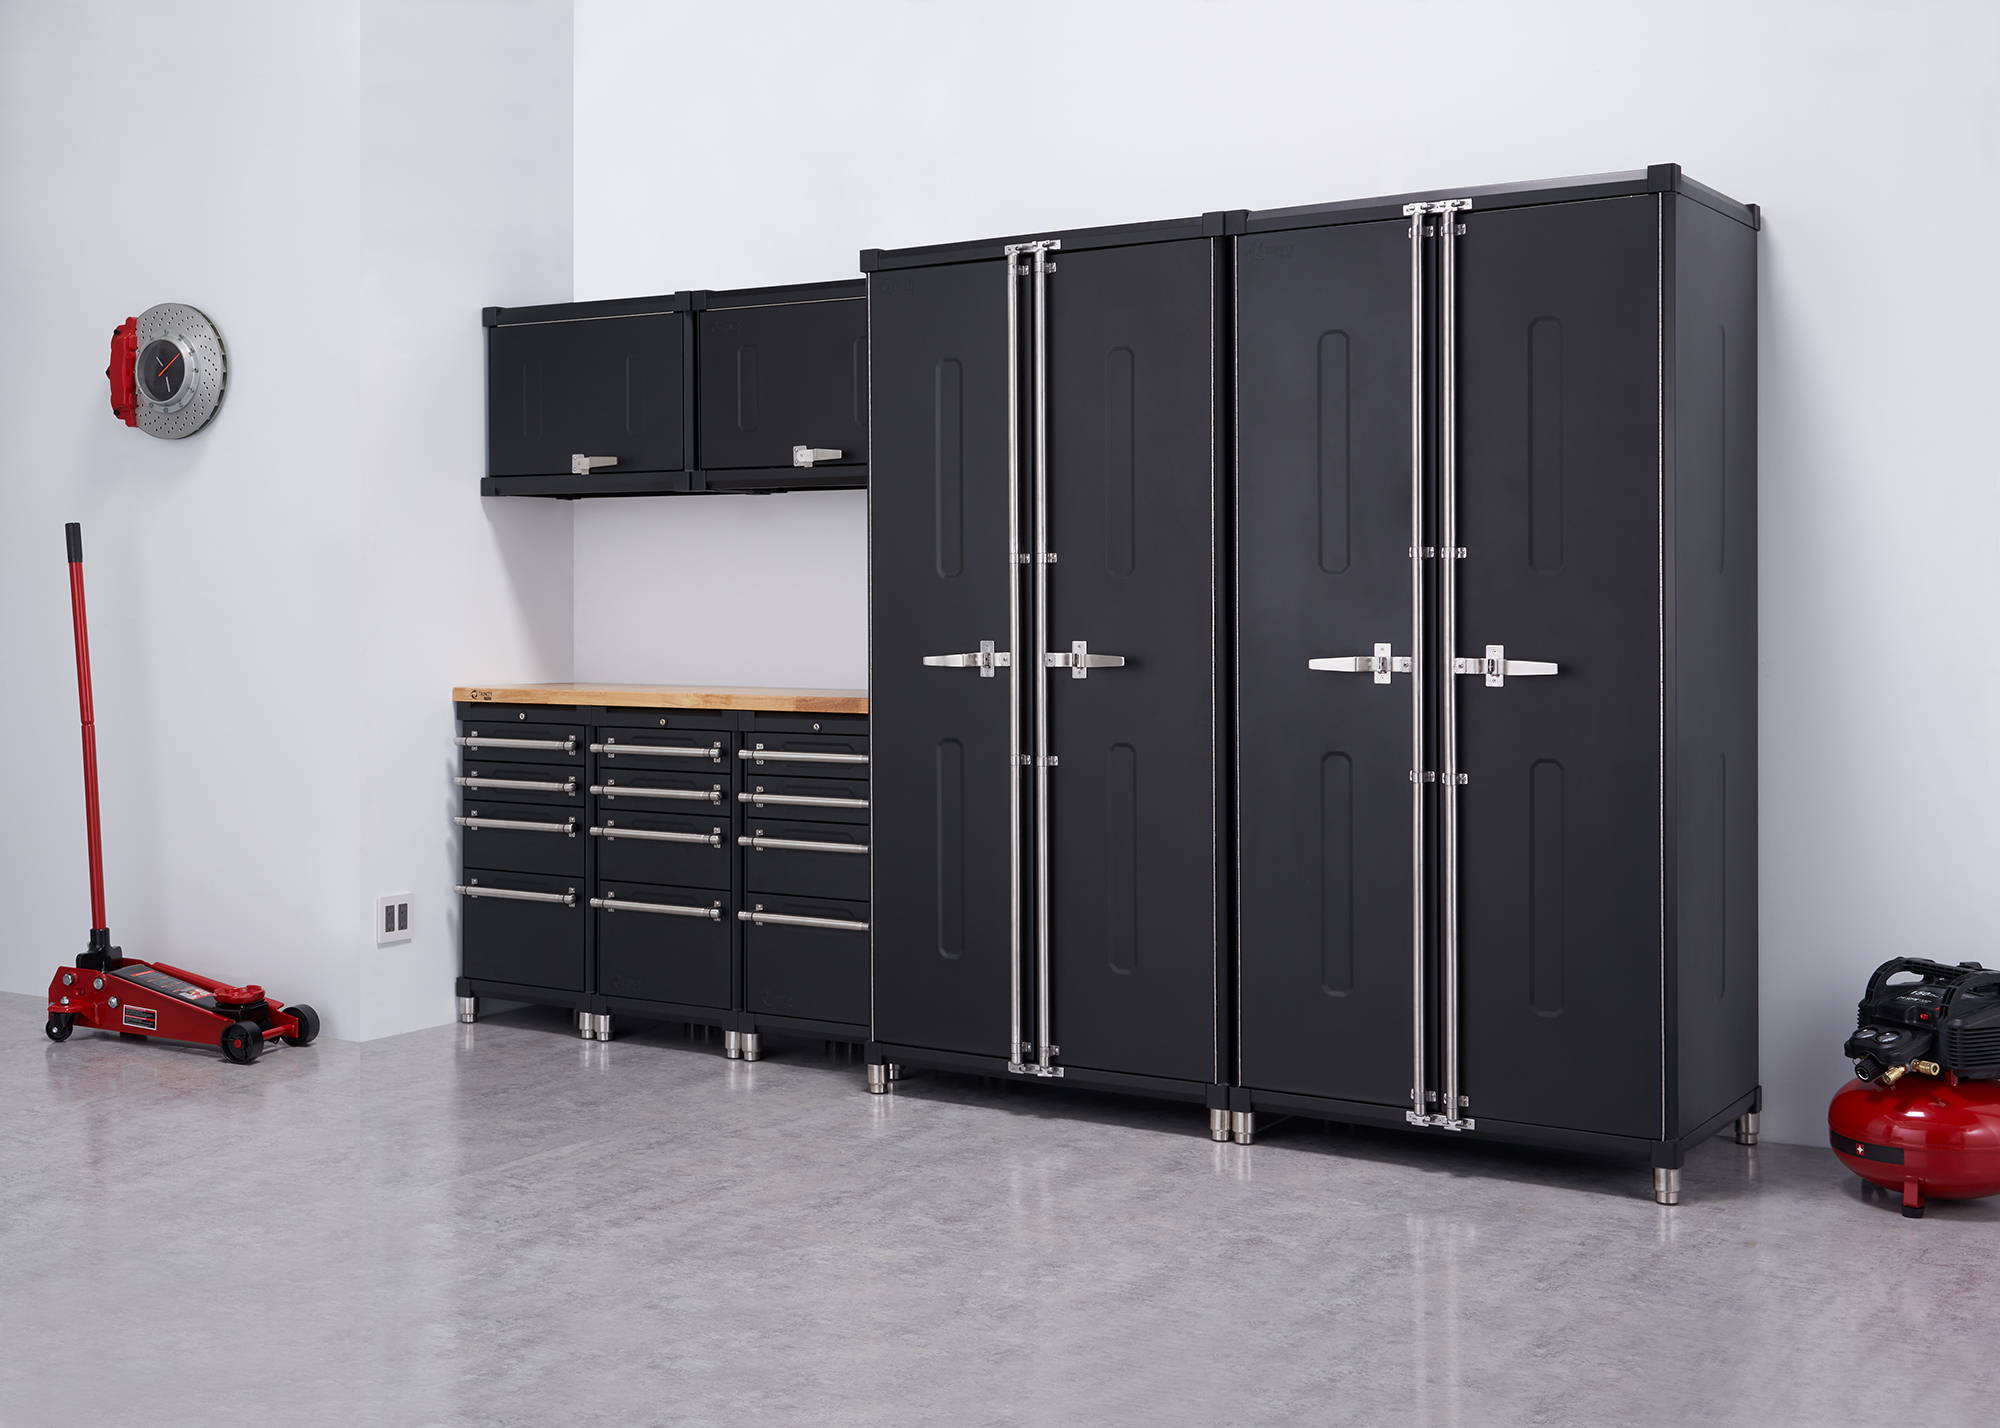 Utility Garage Storage Cabinet Systems & Designs